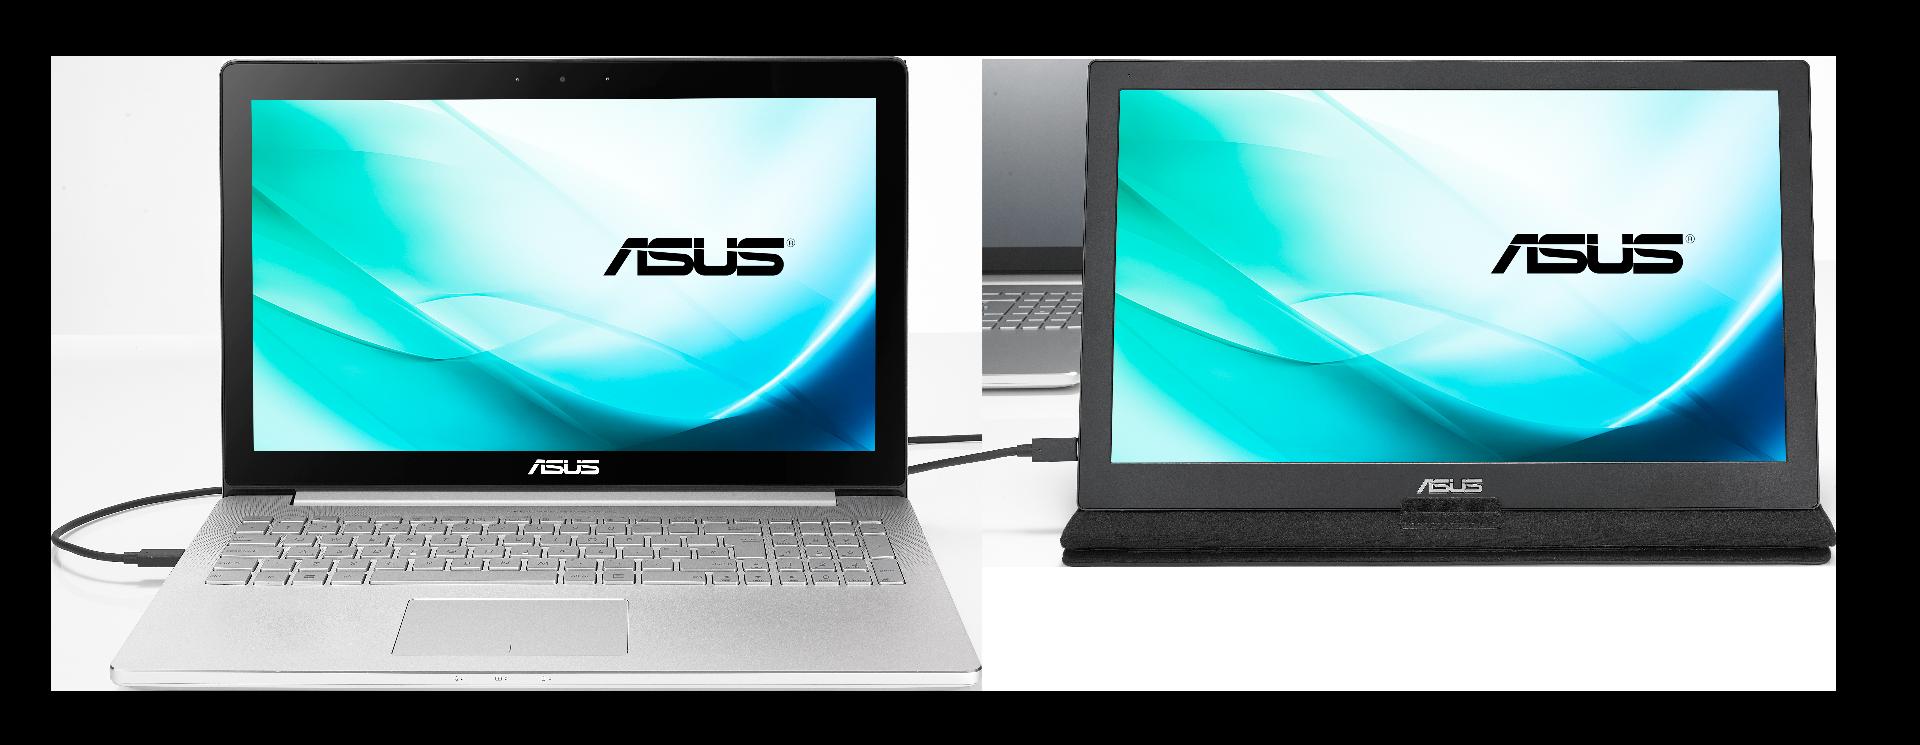 ASUS Announces MB169C+ a 15.6